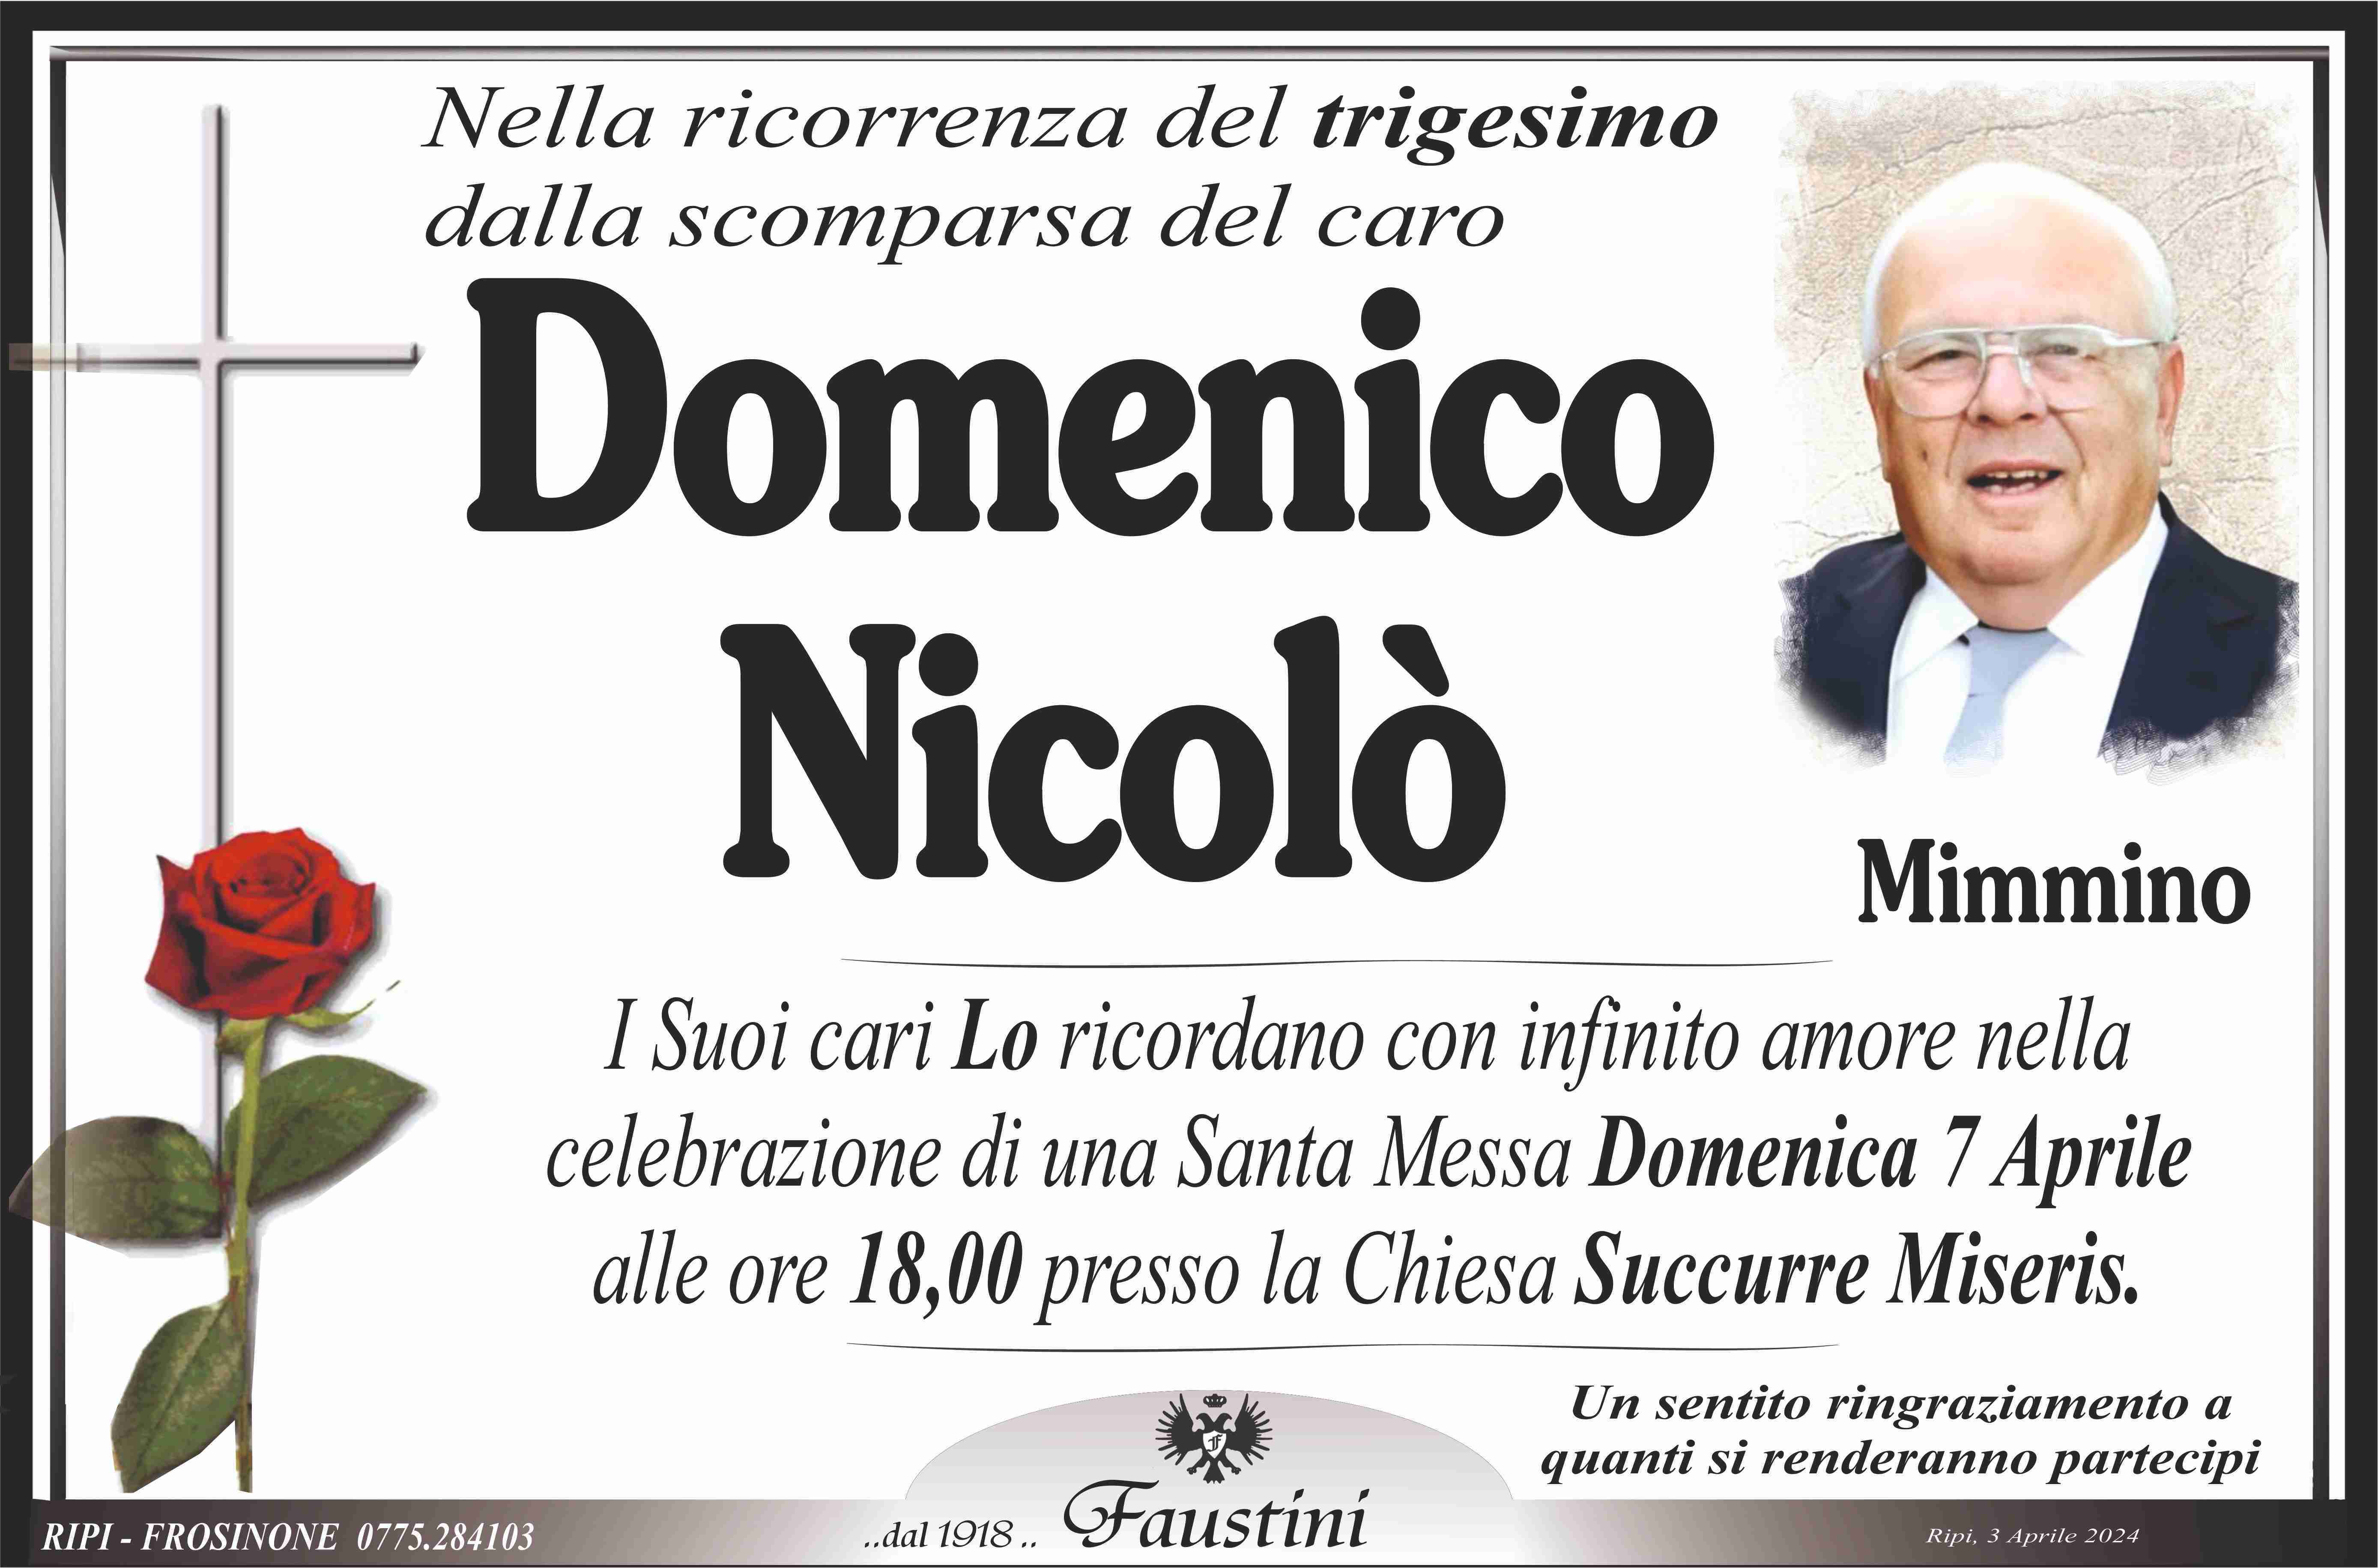 Domenico Nicolò "Mimmino"